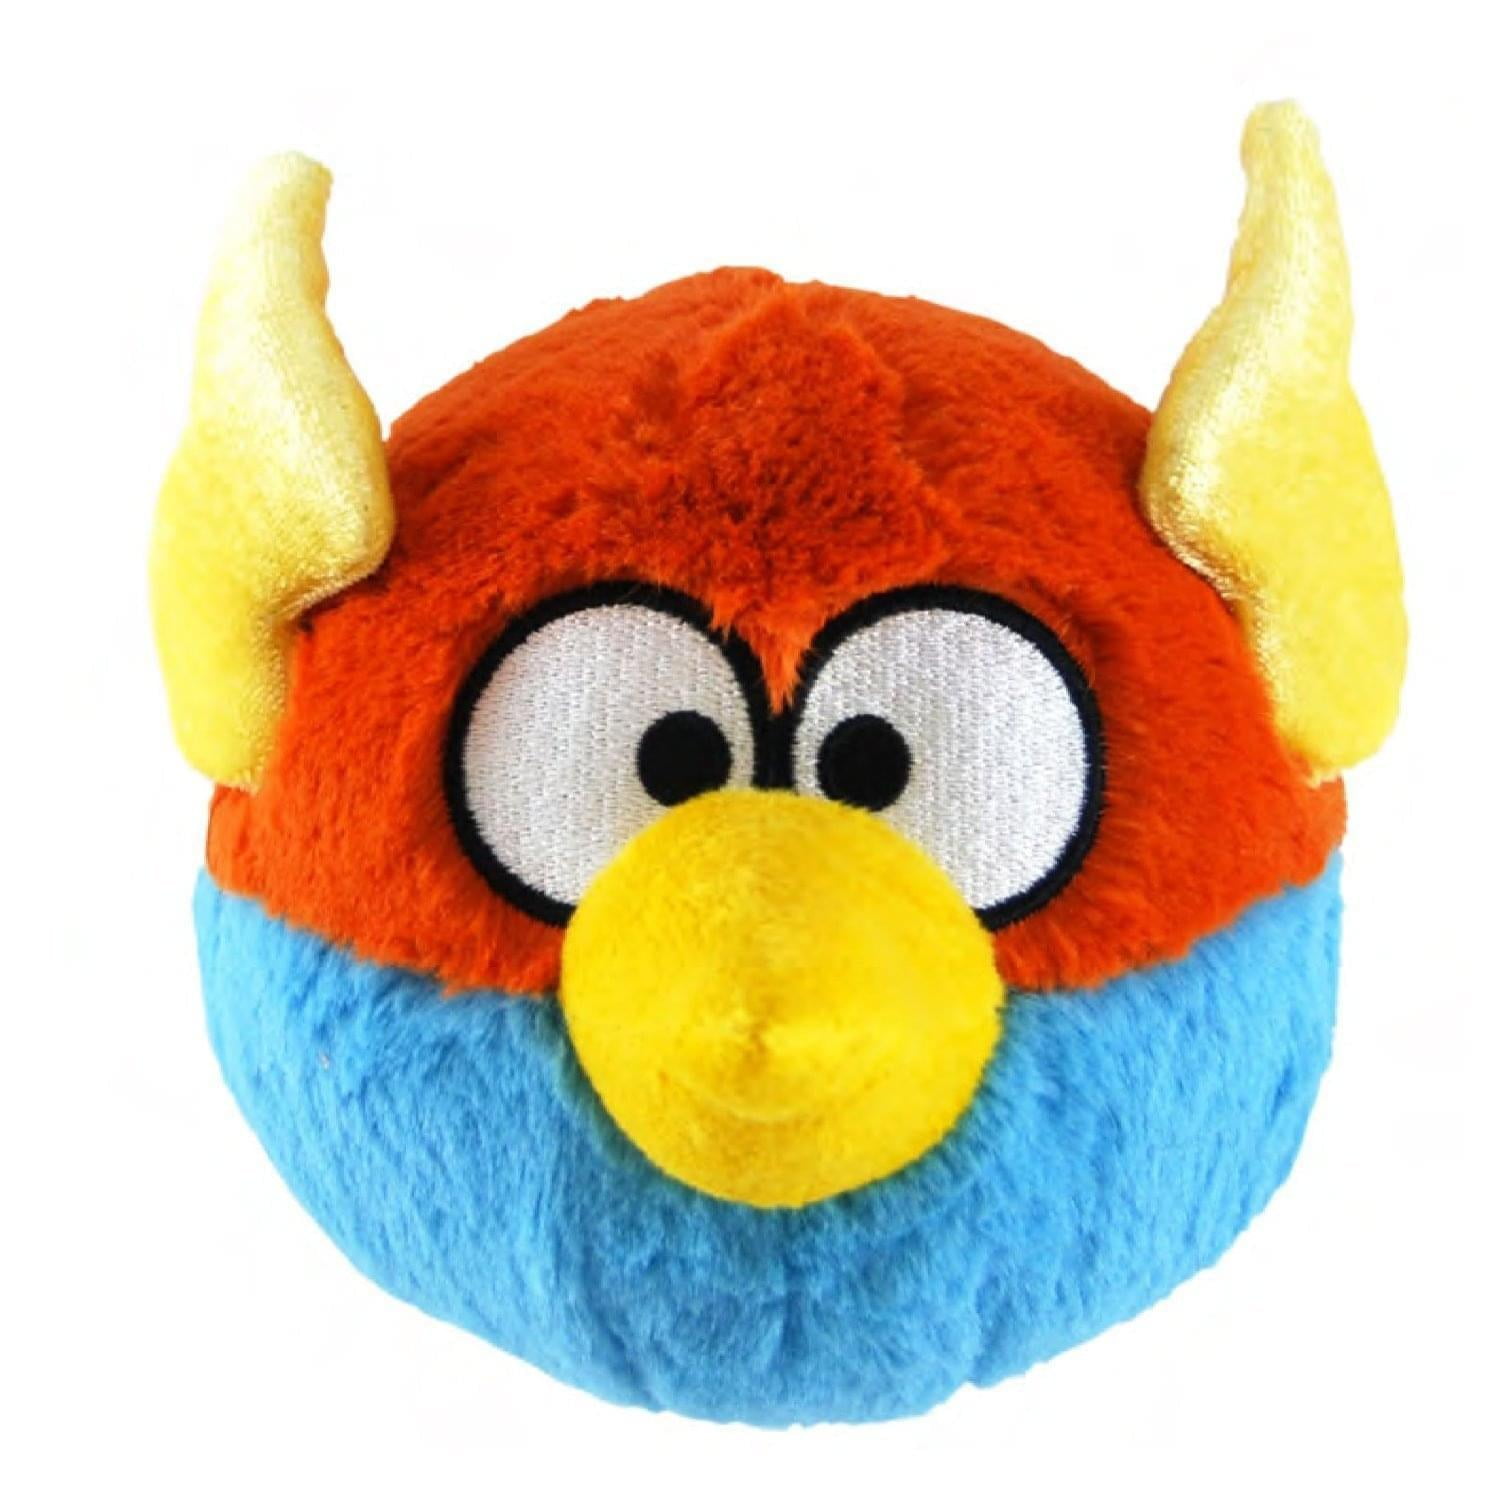 Мягкие игрушки энгри бердз. Angry Birds Space Plush Toys. Angry Birds Plush Toys. Angry Birds Space игрушки мягкие. Angry Birds плюшевые игрушки Теренс.